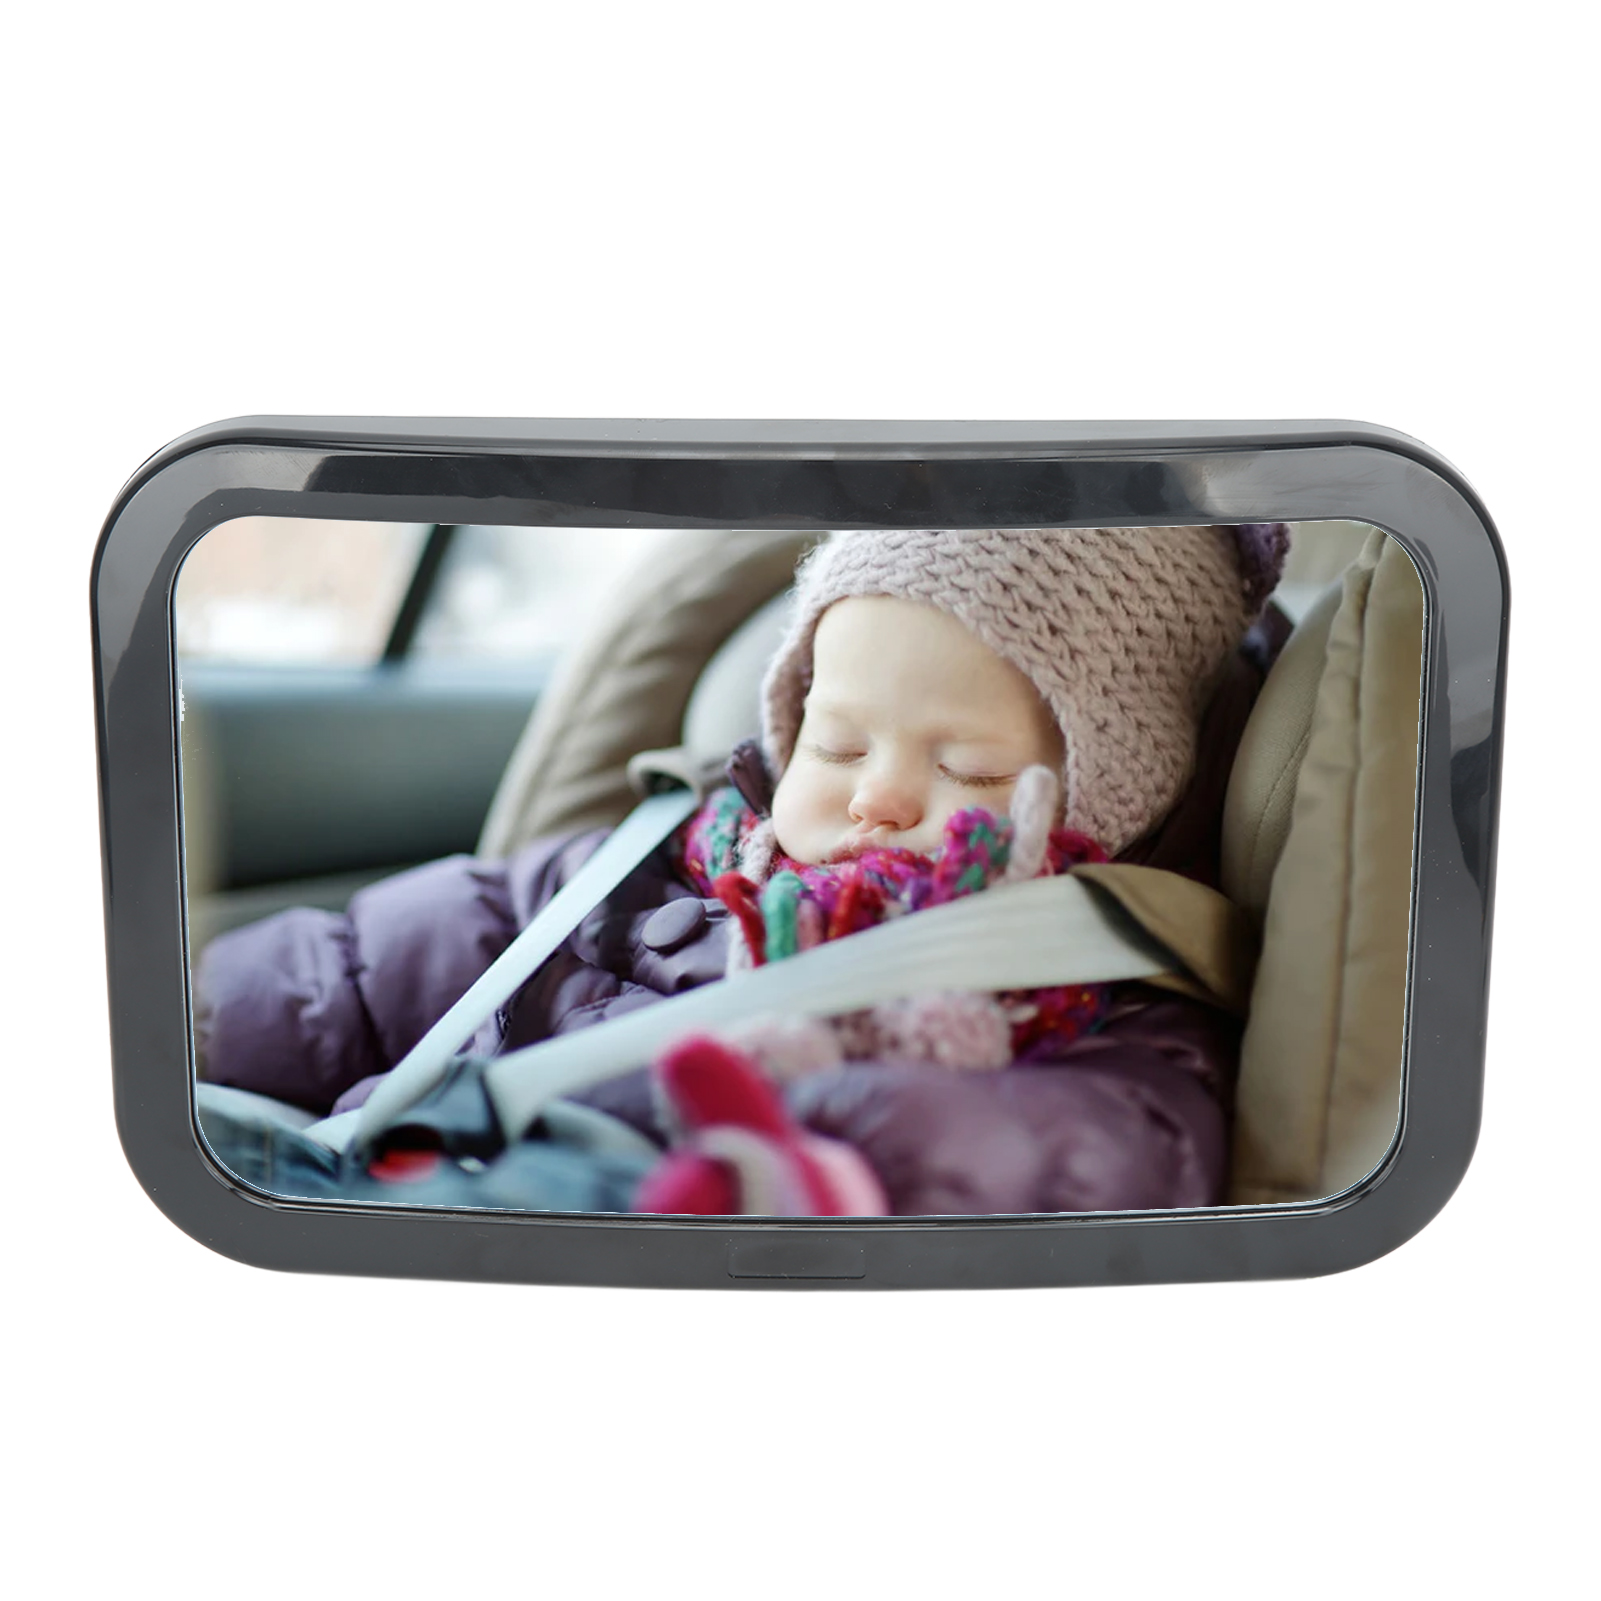 SPECCHIO AUTO NEONATO bambino auto specchio retrovisore visione chiara  monitoraggio sicurezza EUR 24,90 - PicClick IT